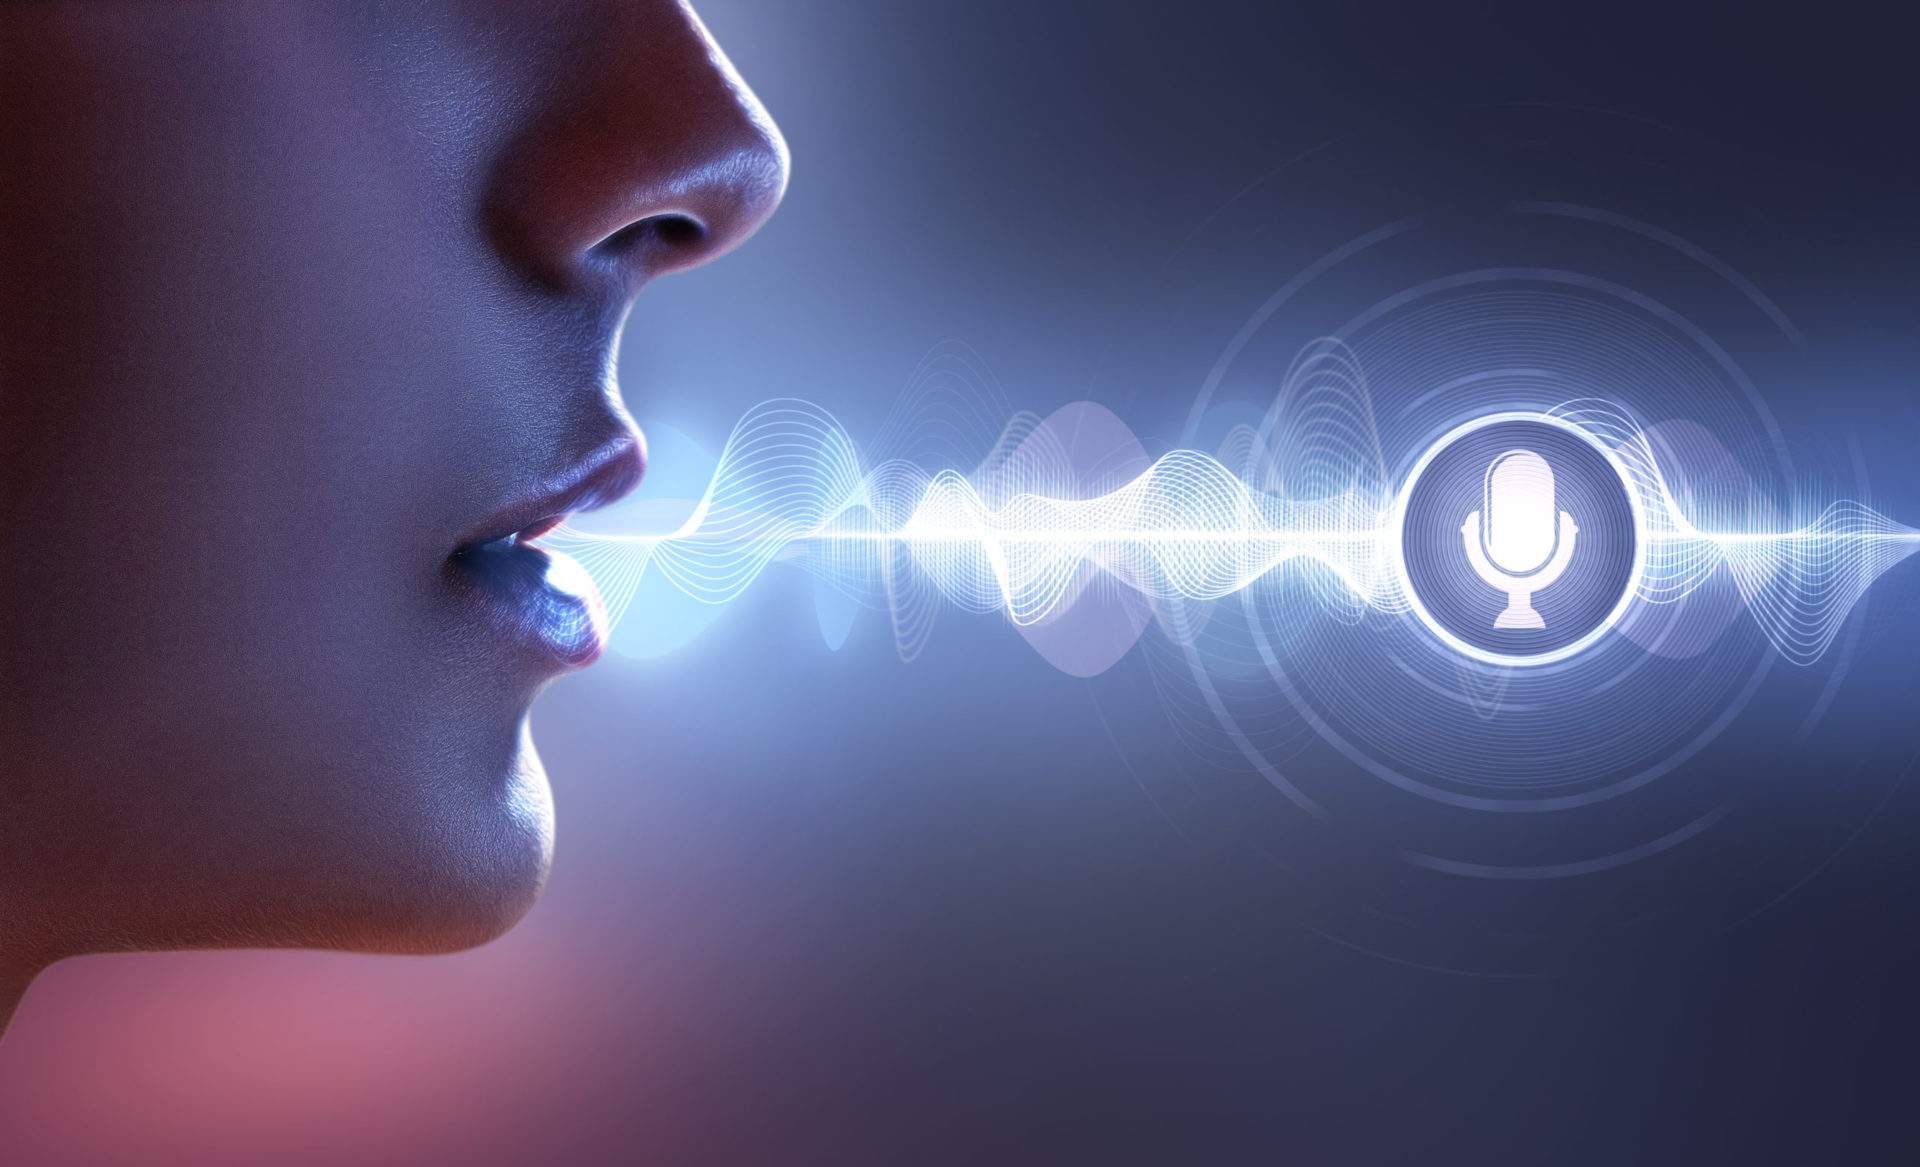 بنبرات صوت شبه حقيقية.. عمليات الاحتيال عبر استنساخ الصوت بالذكاء الاصطناعي تثير قلقًا متزايدًا - بوابة الأهرام